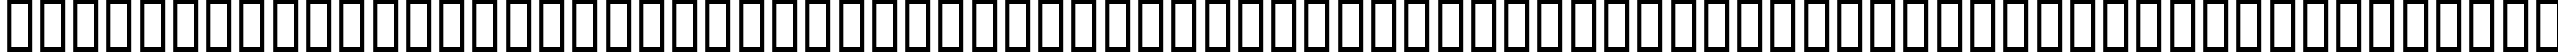 Пример написания английского алфавита шрифтом CityBlueprint